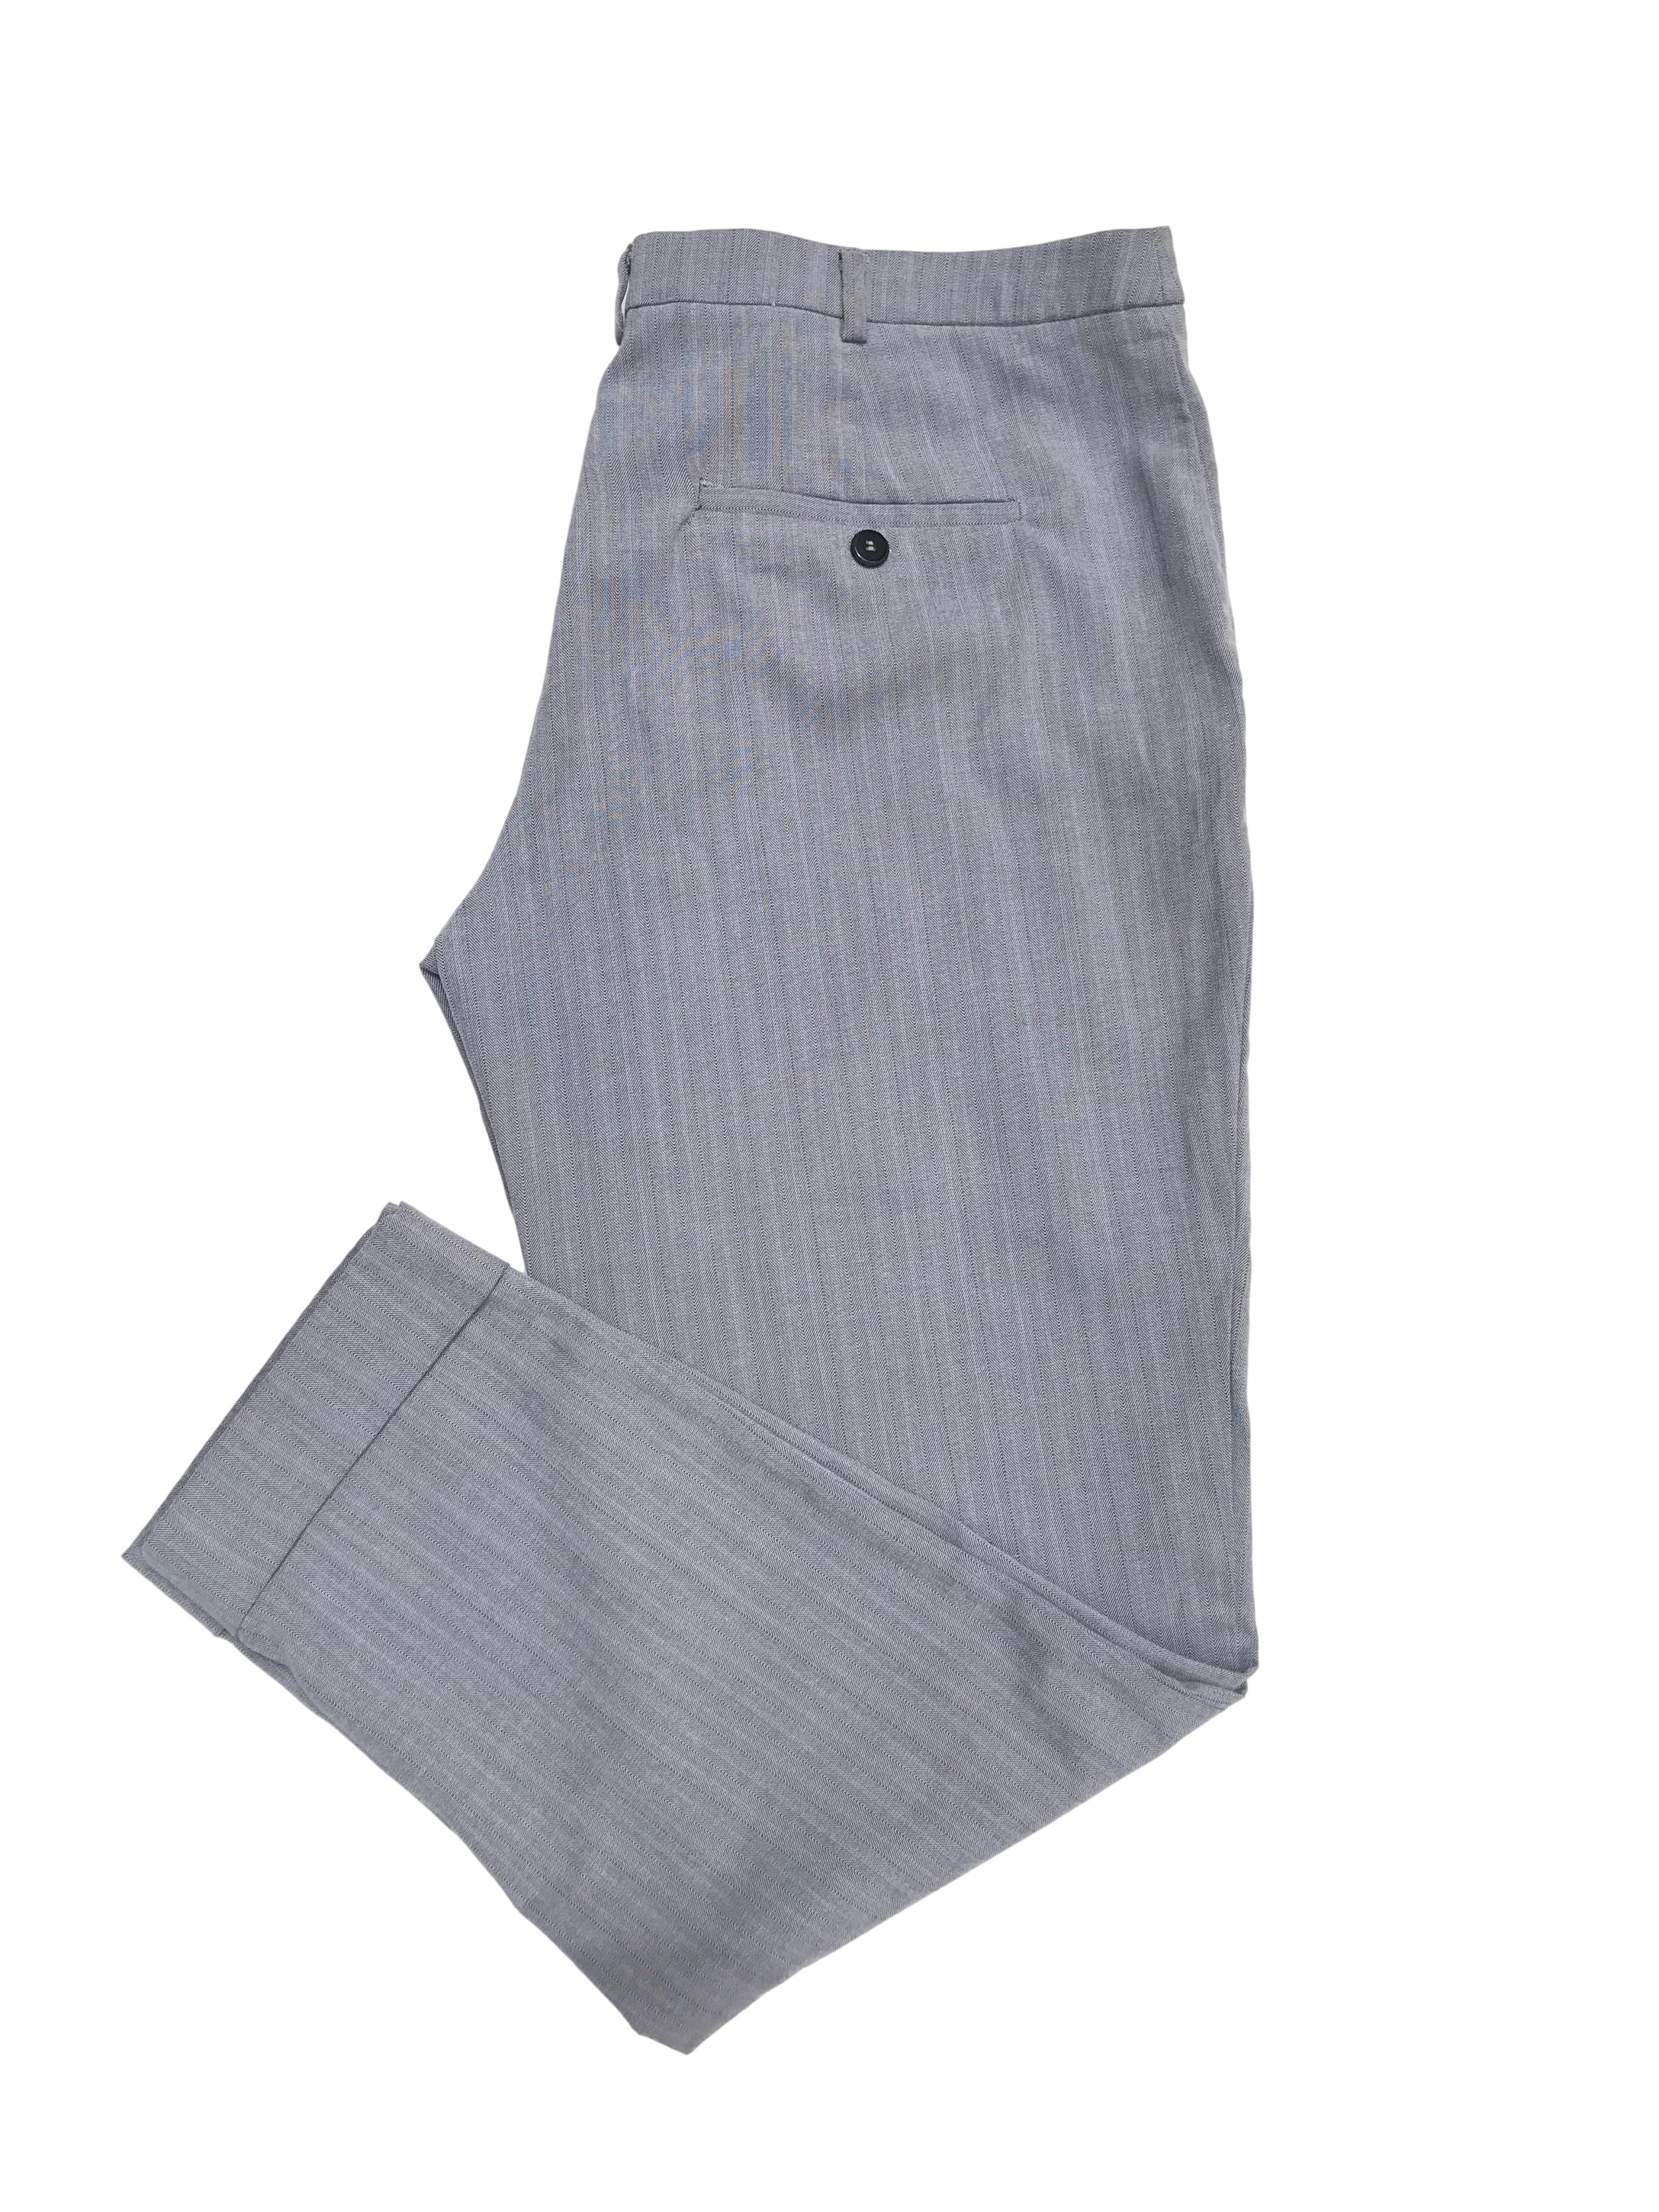 Pantalón de vestir Mango en tonos plomos, corte slim con bolsillos laterales y dobladillo en la basta. Pretina 90cm Cadera 110cm